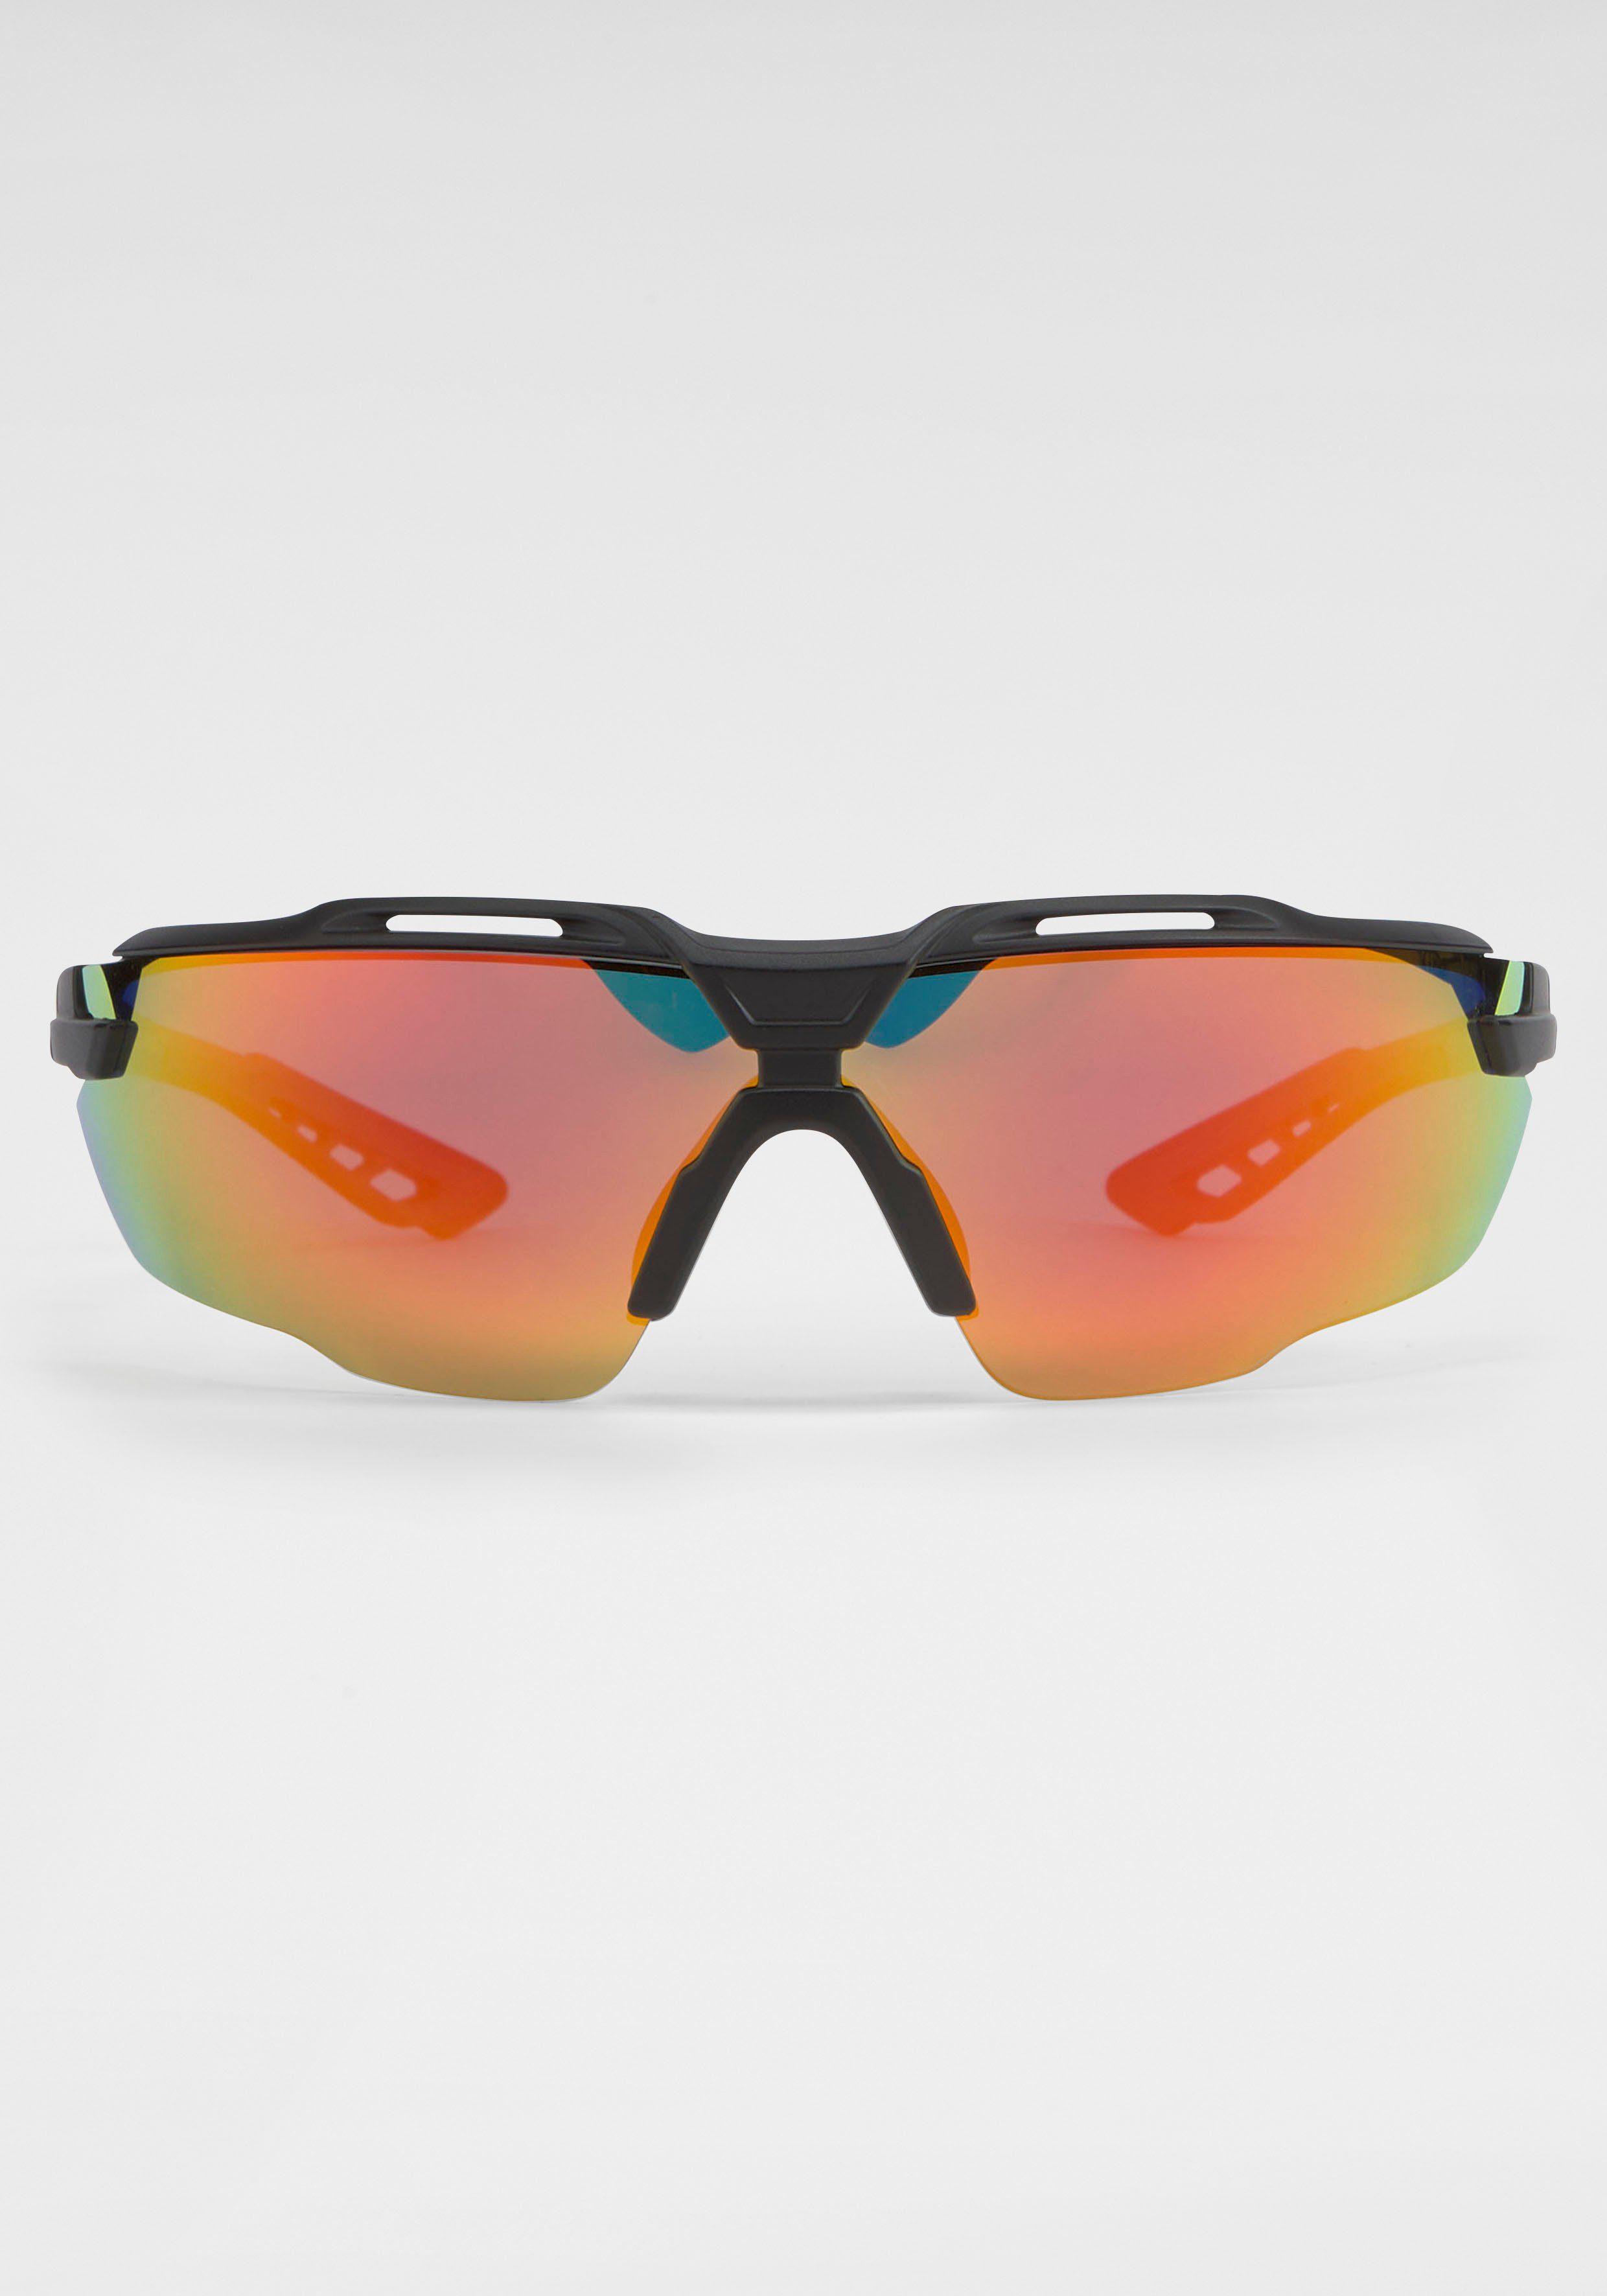 BACK IN BLACK Eyewear Sonnenbrille mit Gläsern gebogenen schwarz-orange